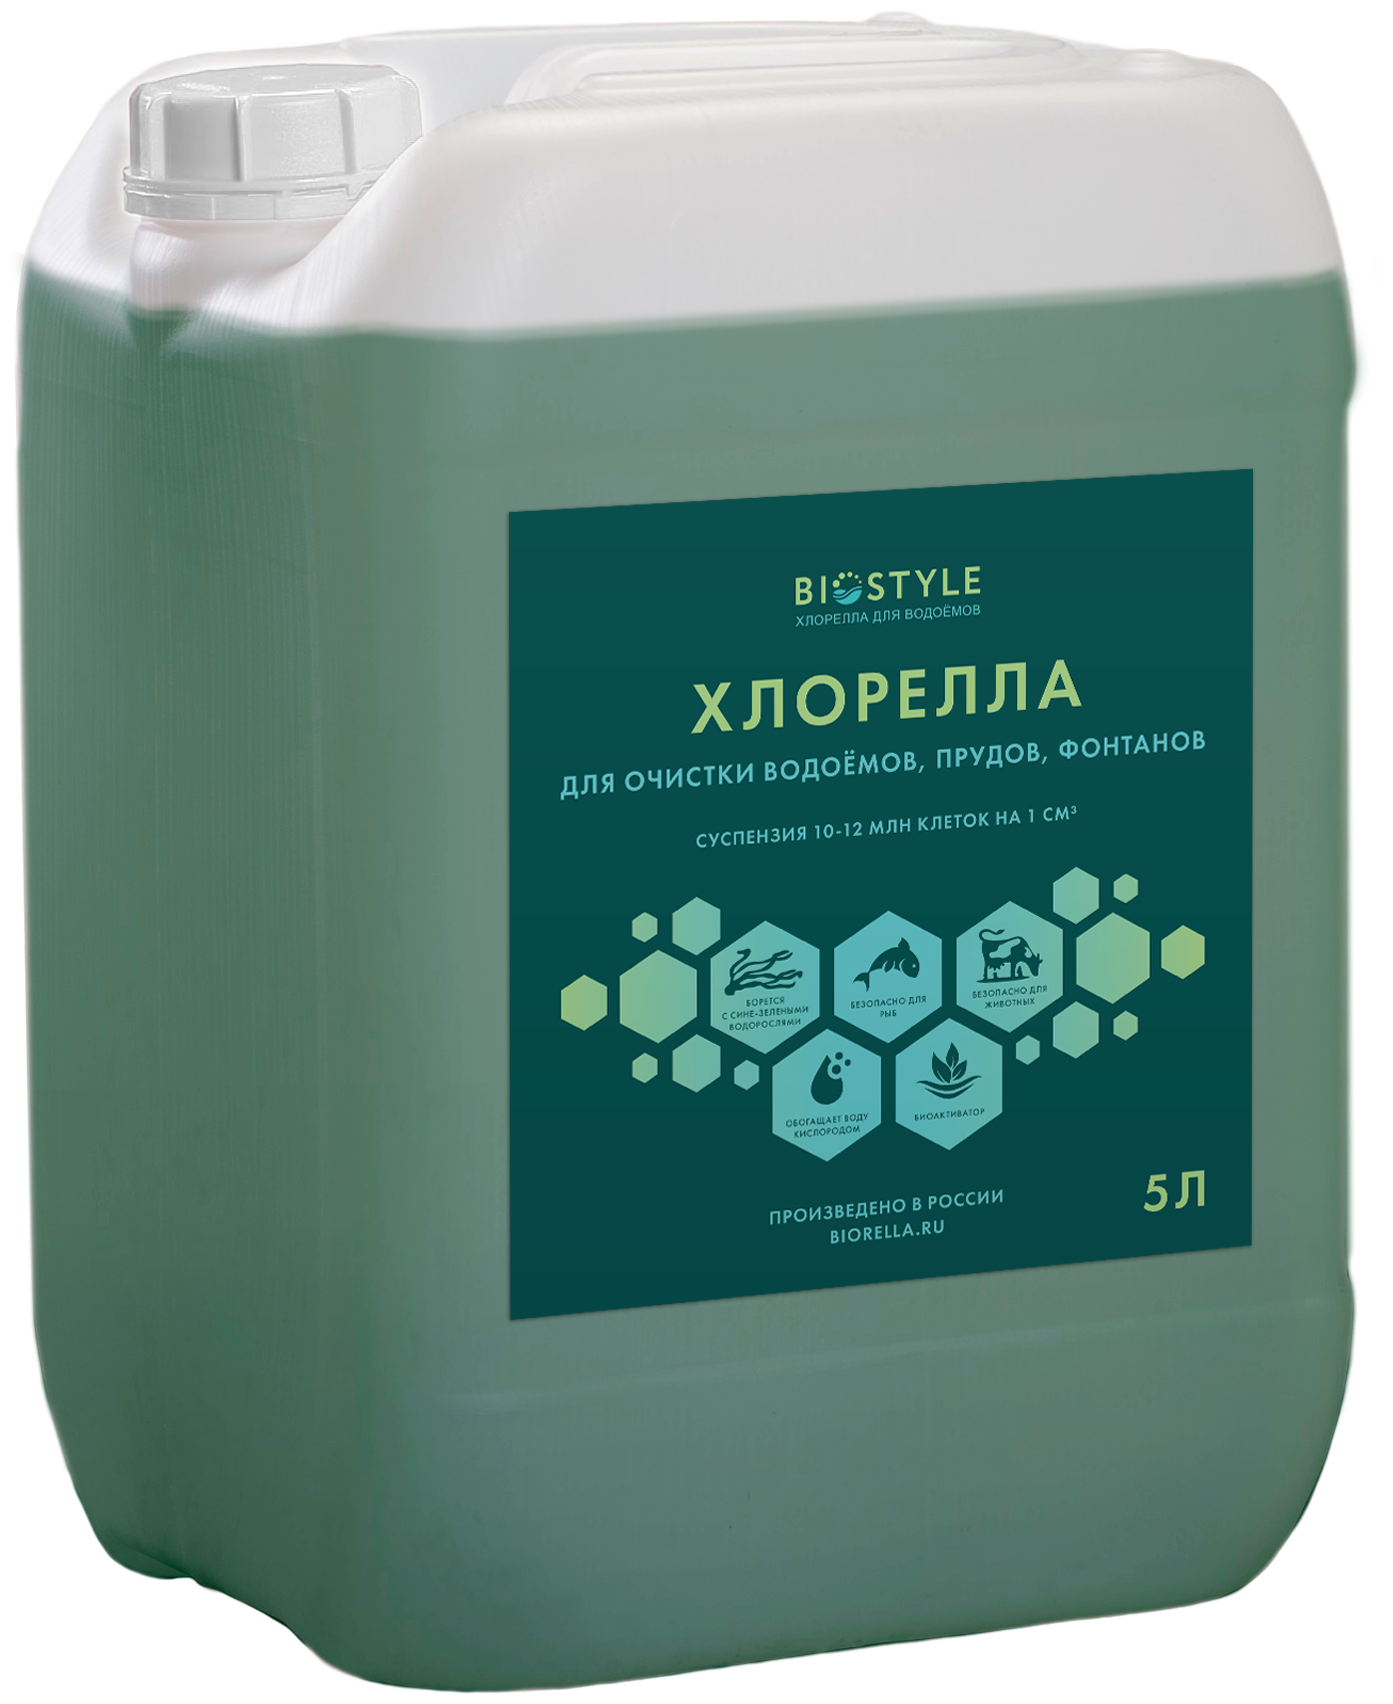 BIOSTYLE Суспензия хлореллы средство для очистки водоемов и прудов 5 литров (Chlorella vulgaris 100%)